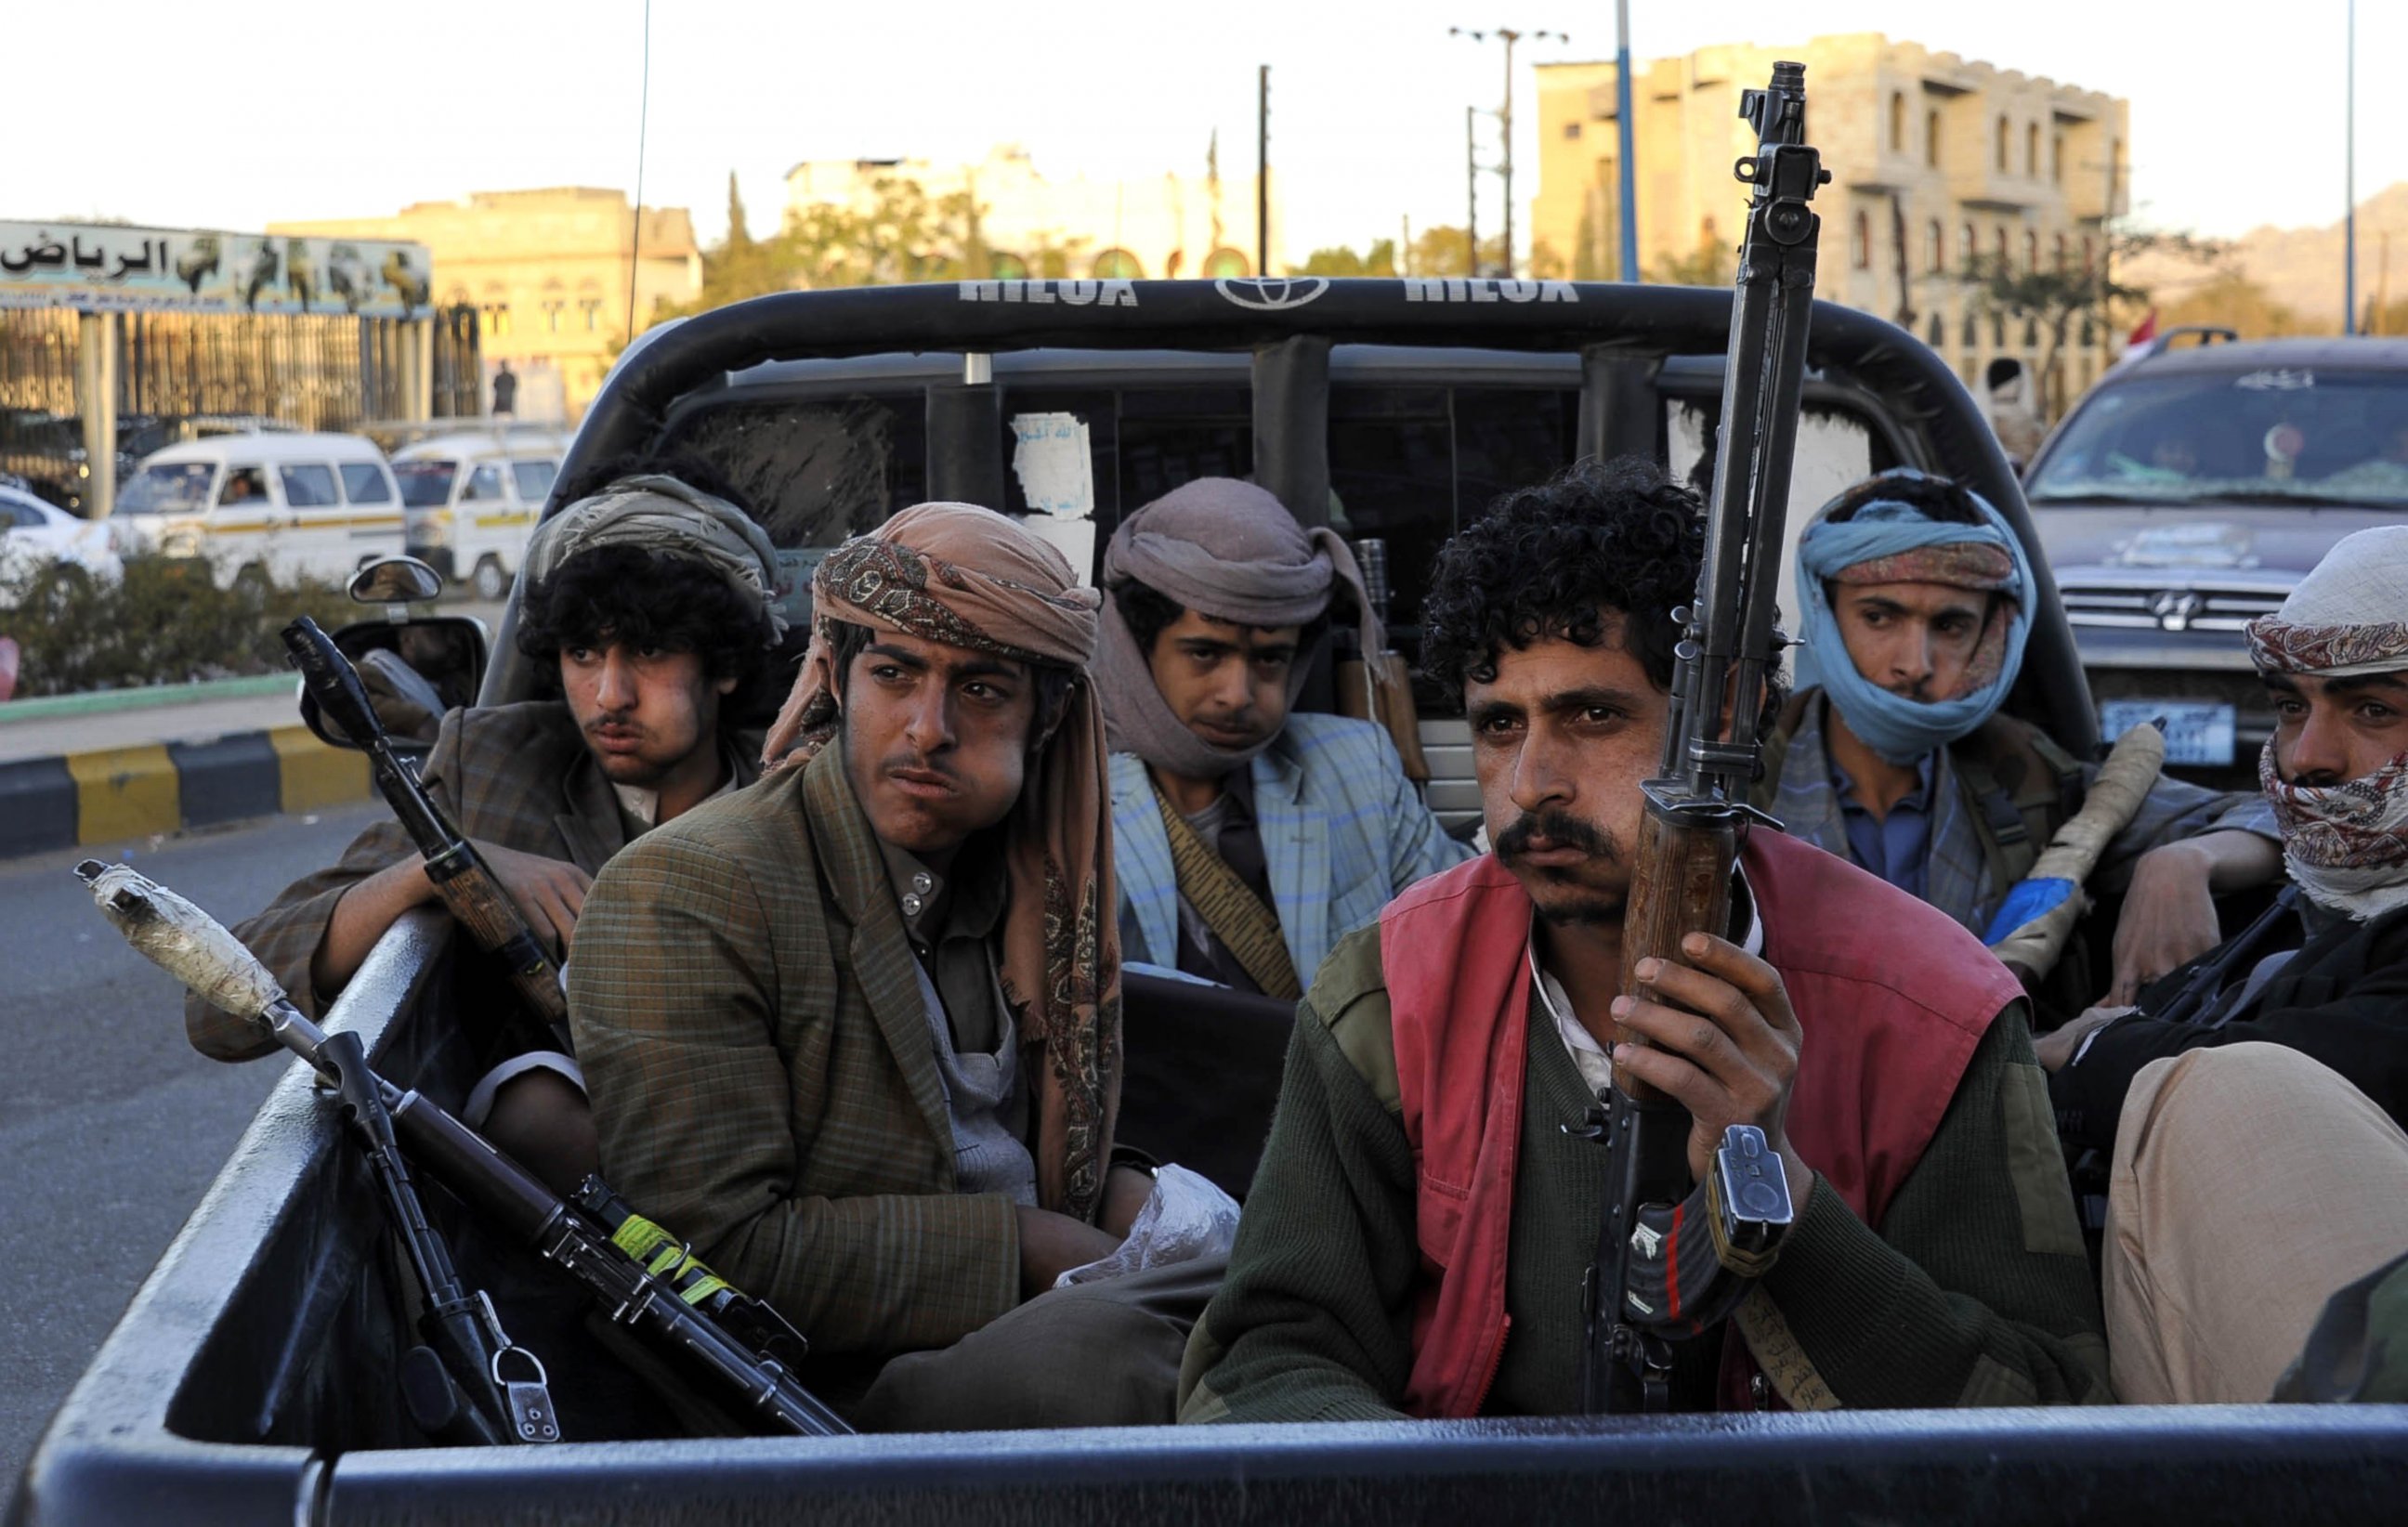 PHOTO: A group of Houthi Militia in Sanaa, Yemen, Feb. 07, 2015.